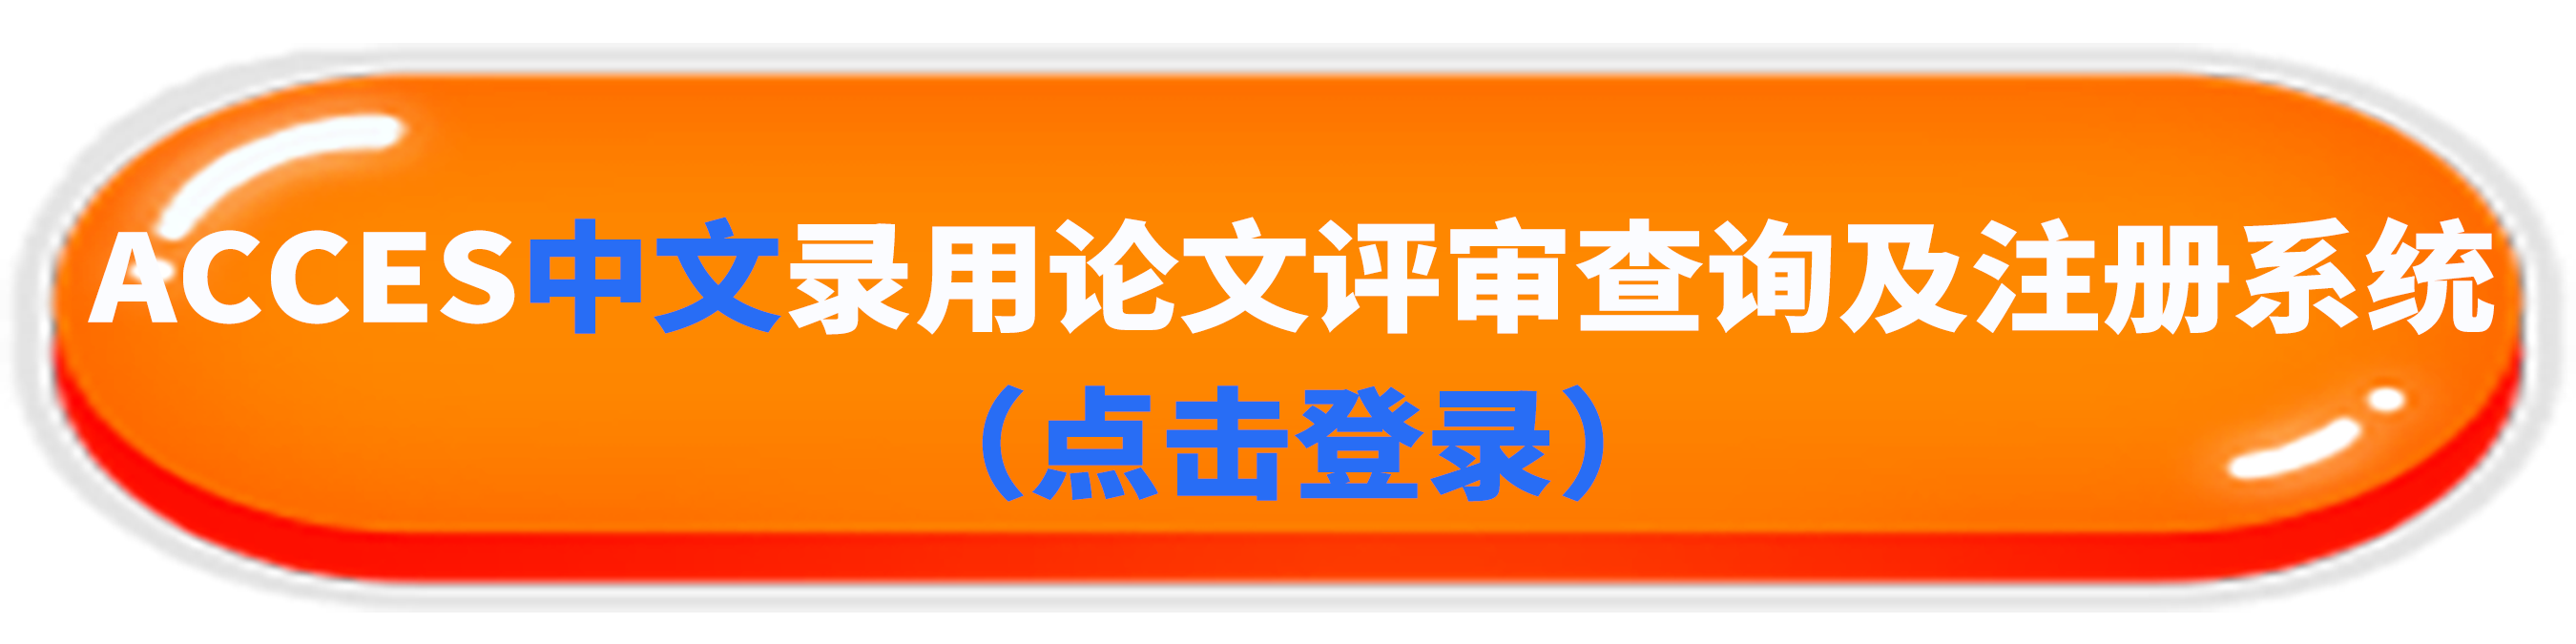 中文注册系统